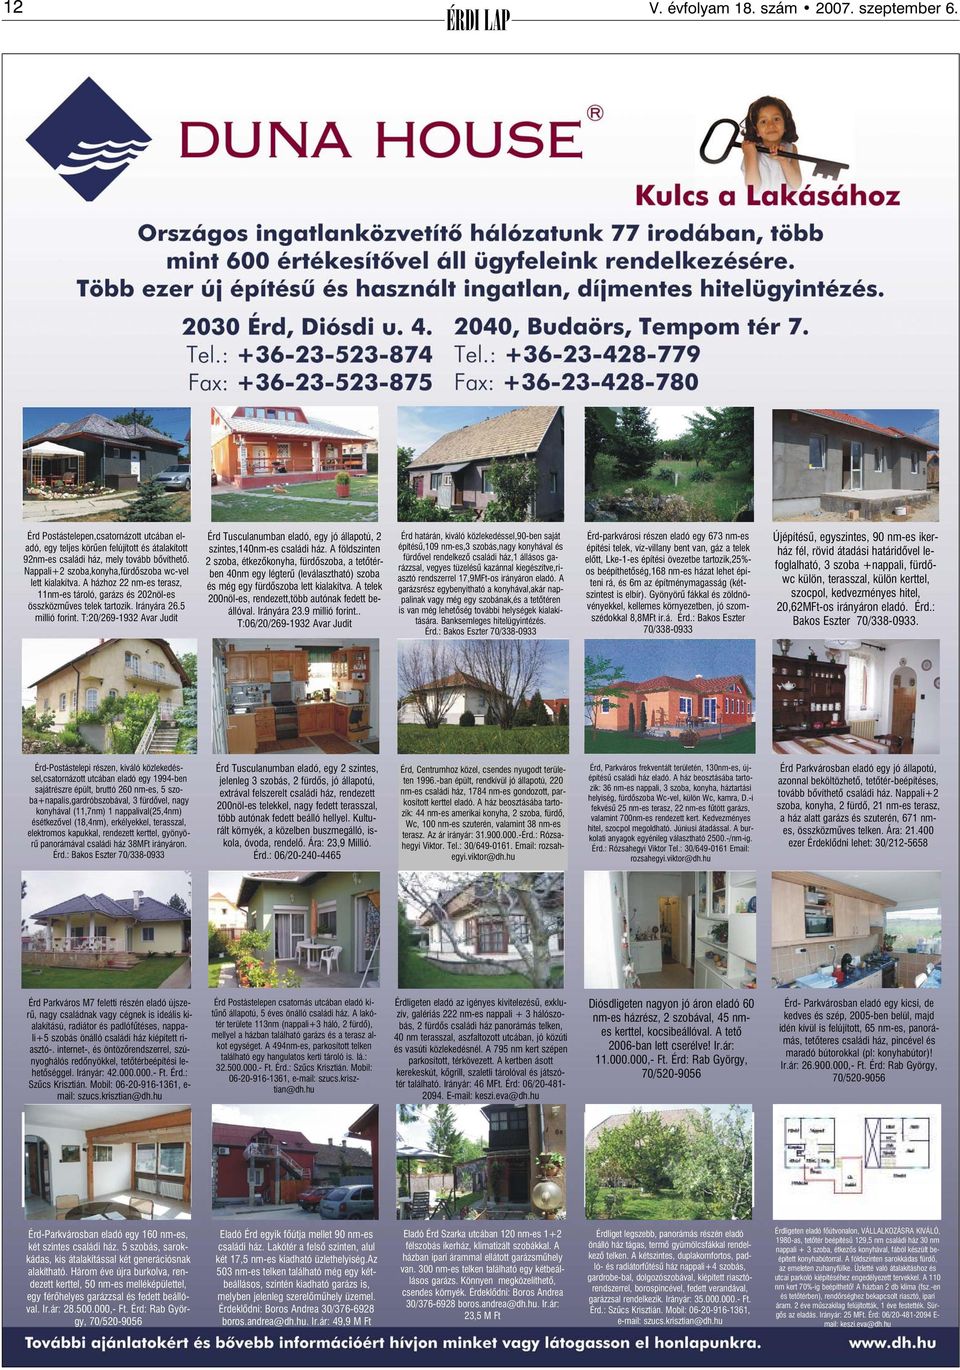 T:20/269-1932 Avar Judit Érd Tusculanumban eladó, egy jó állapotú, 2 szintes,140nm-es családi ház.